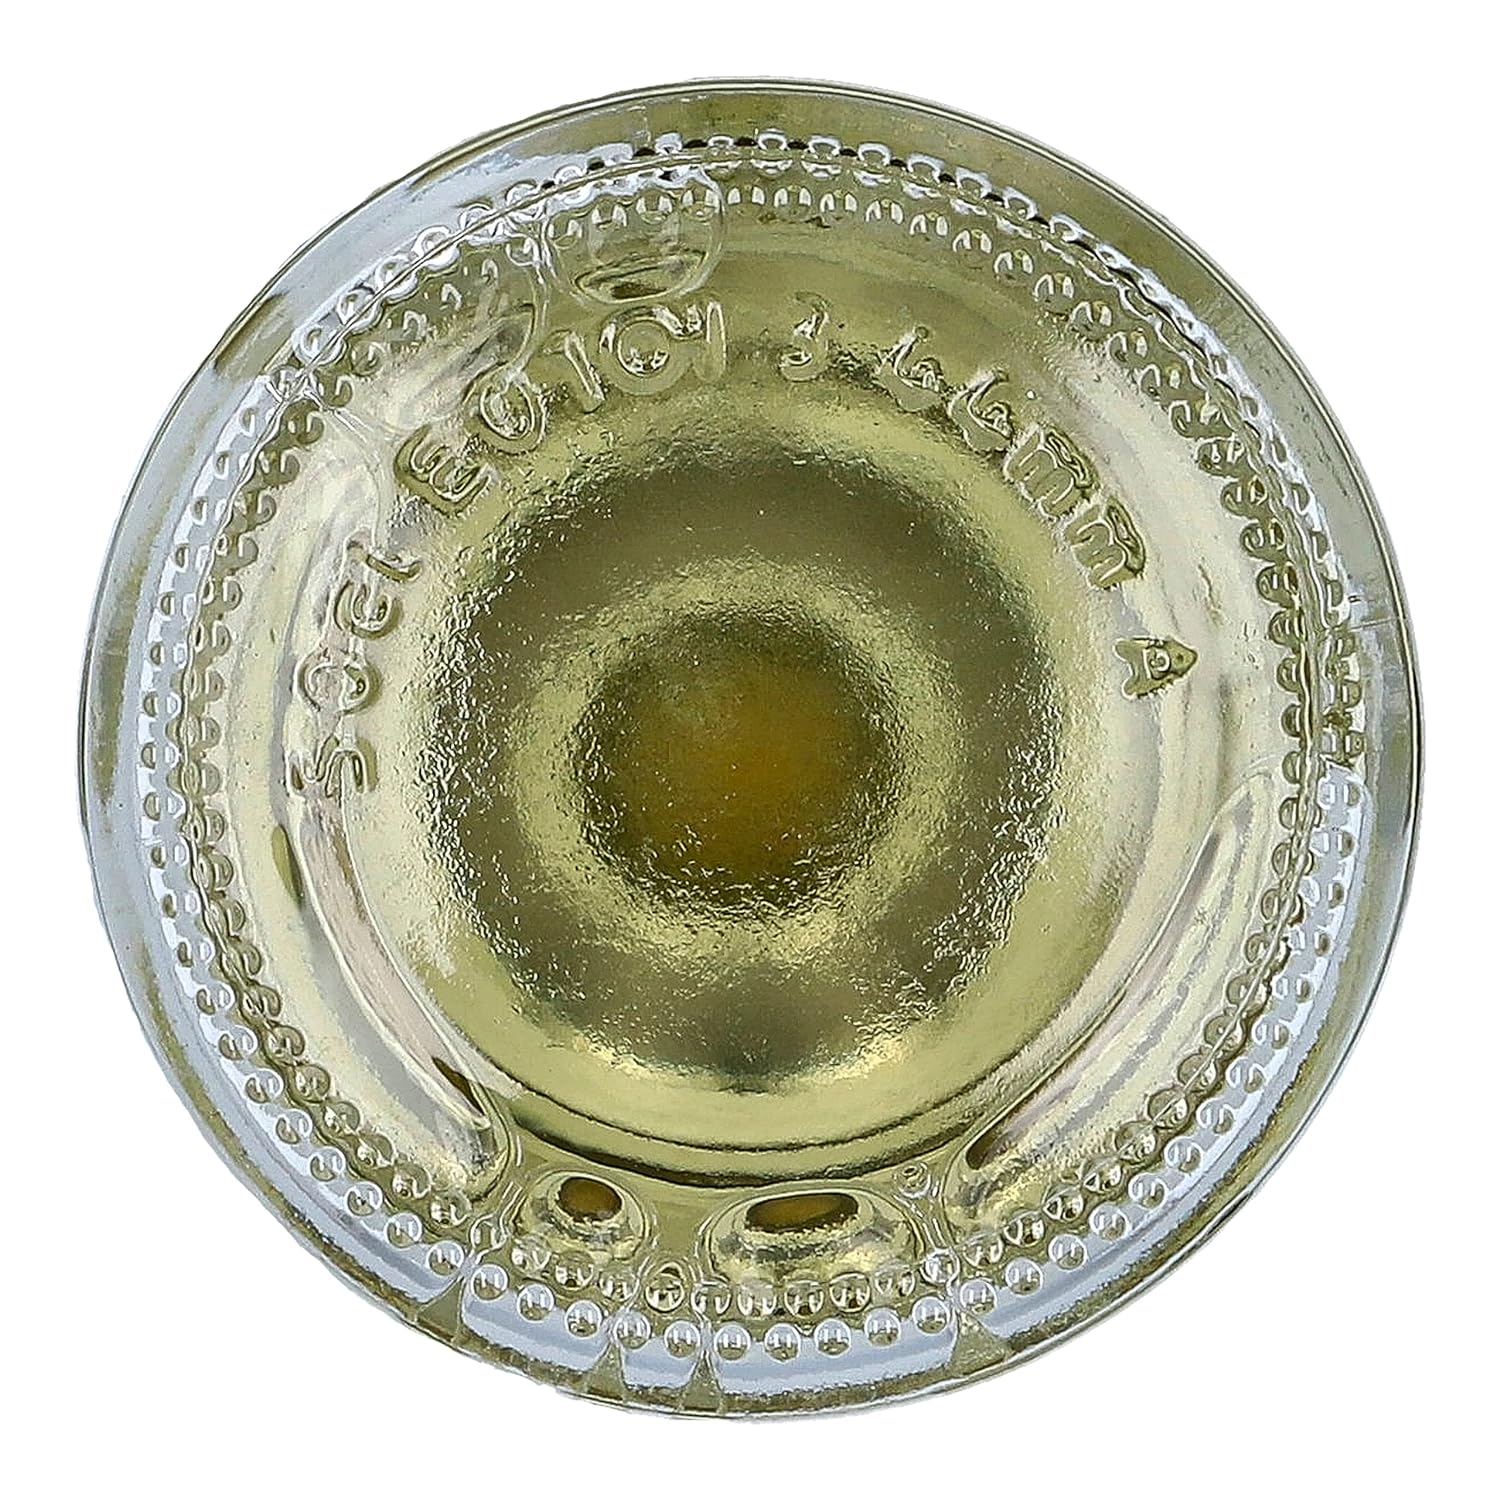 Colavita White Balsamic Vinegar, 17 Fl Oz (Pack of 6)